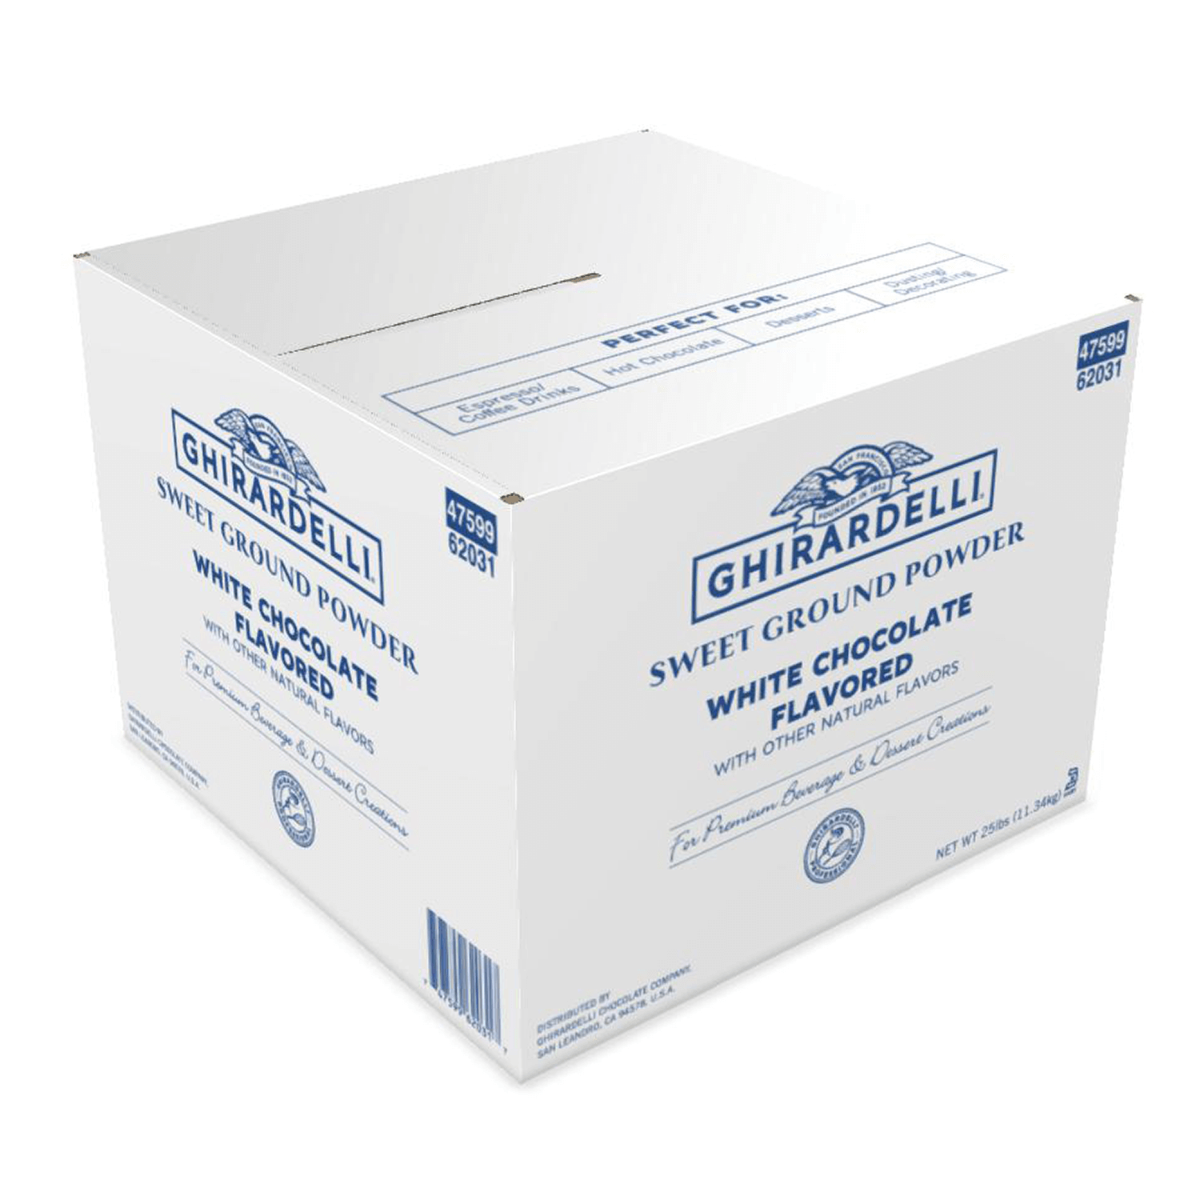 White box of Ghirardelli Sweet Ground White Chocolate Flavored Powder